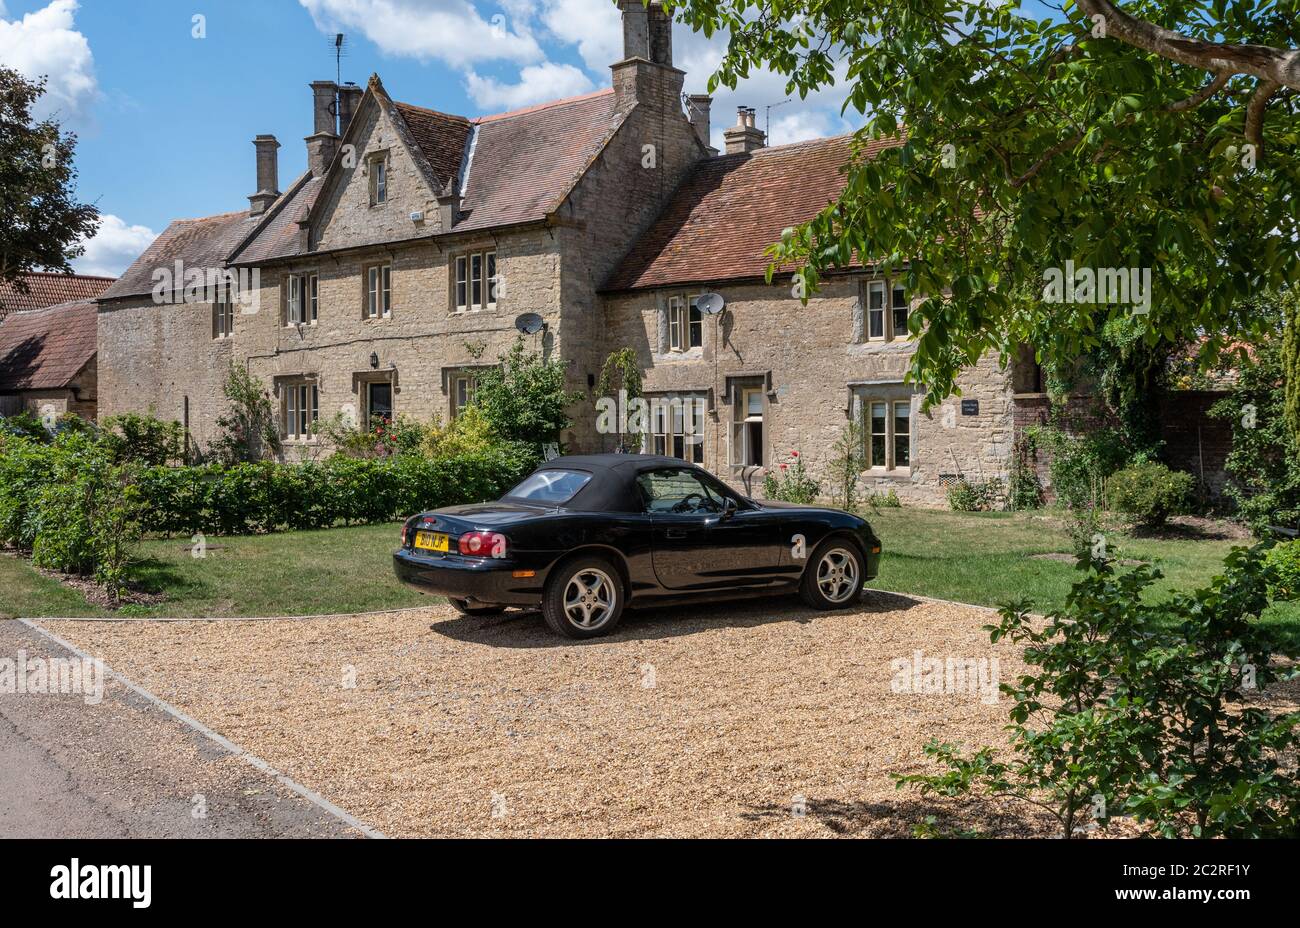 Una scena tradizionale inglese paese, una macchina sportiva parcheggiata di fronte a vecchi cottage in pietra; Castle Ashby, Northamptonshire, Regno Unito Foto Stock